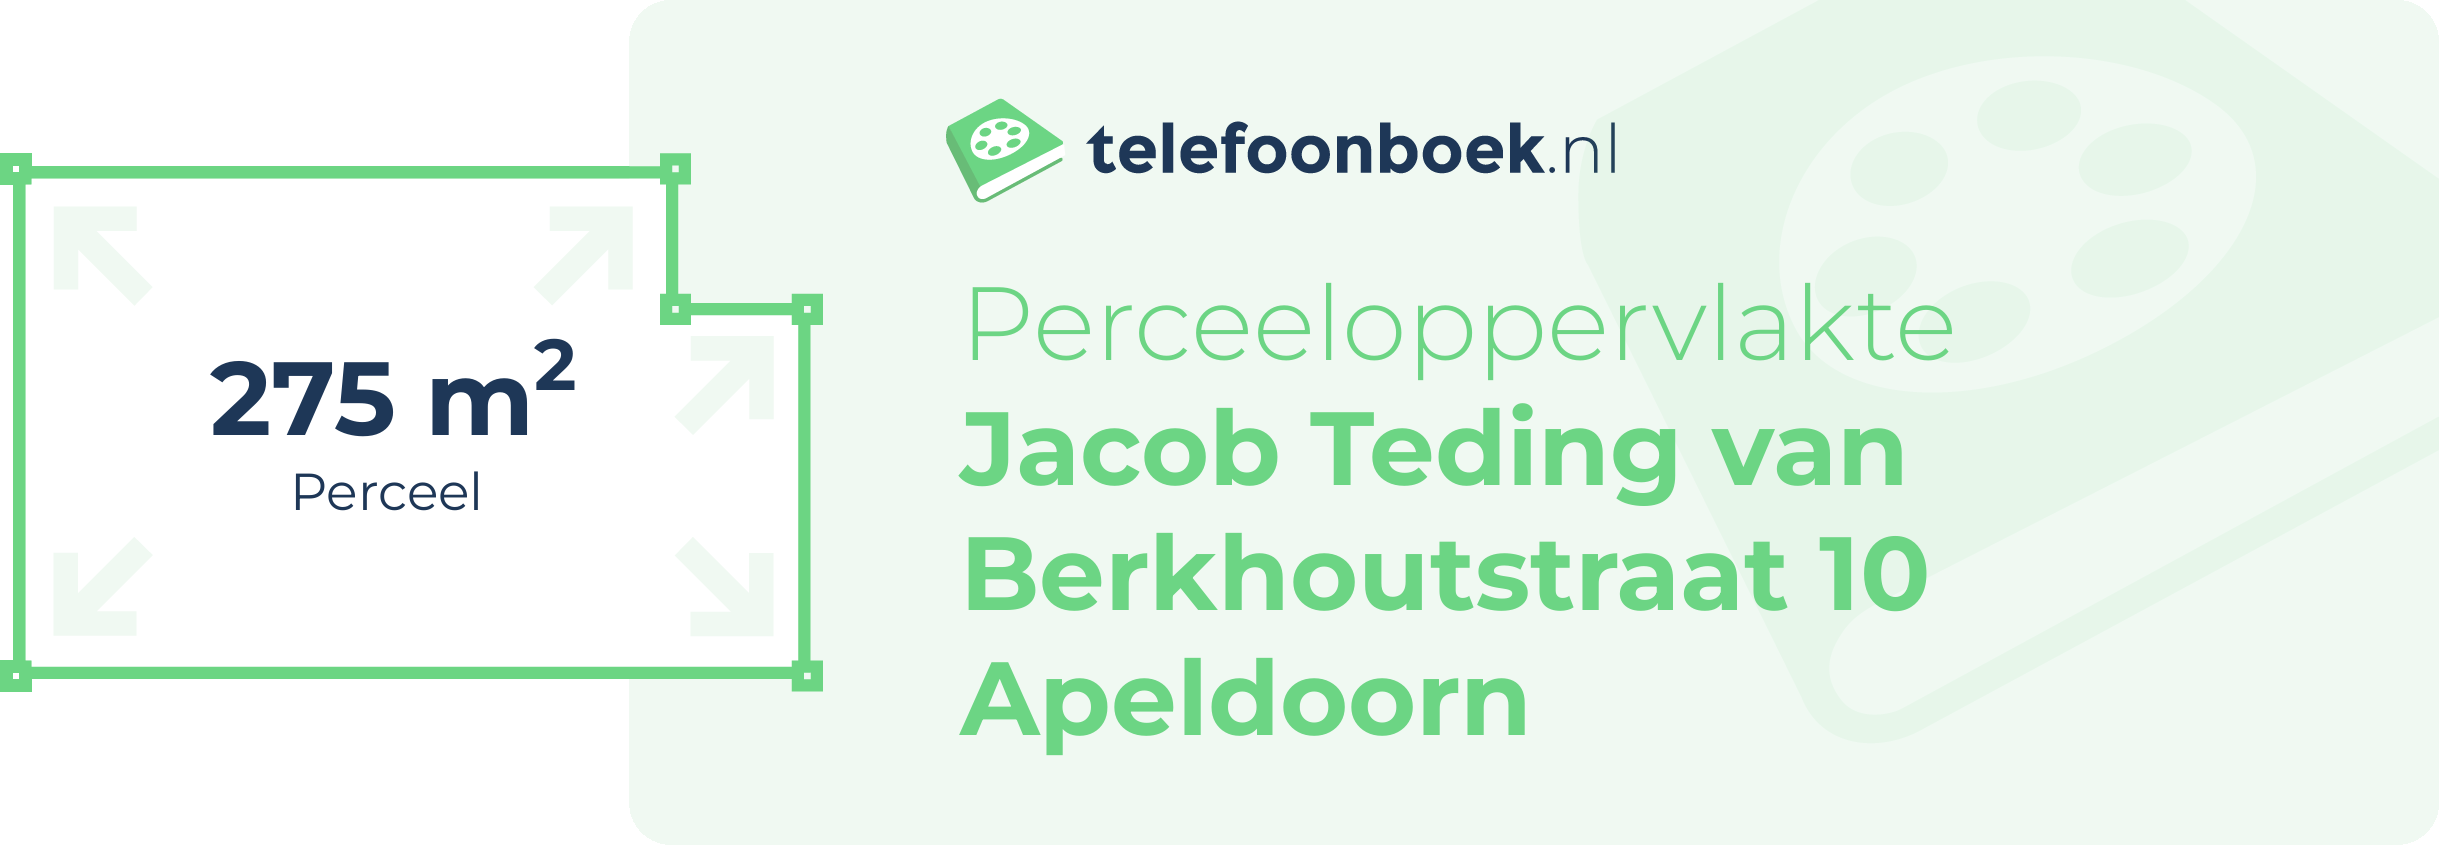 Perceeloppervlakte Jacob Teding Van Berkhoutstraat 10 Apeldoorn